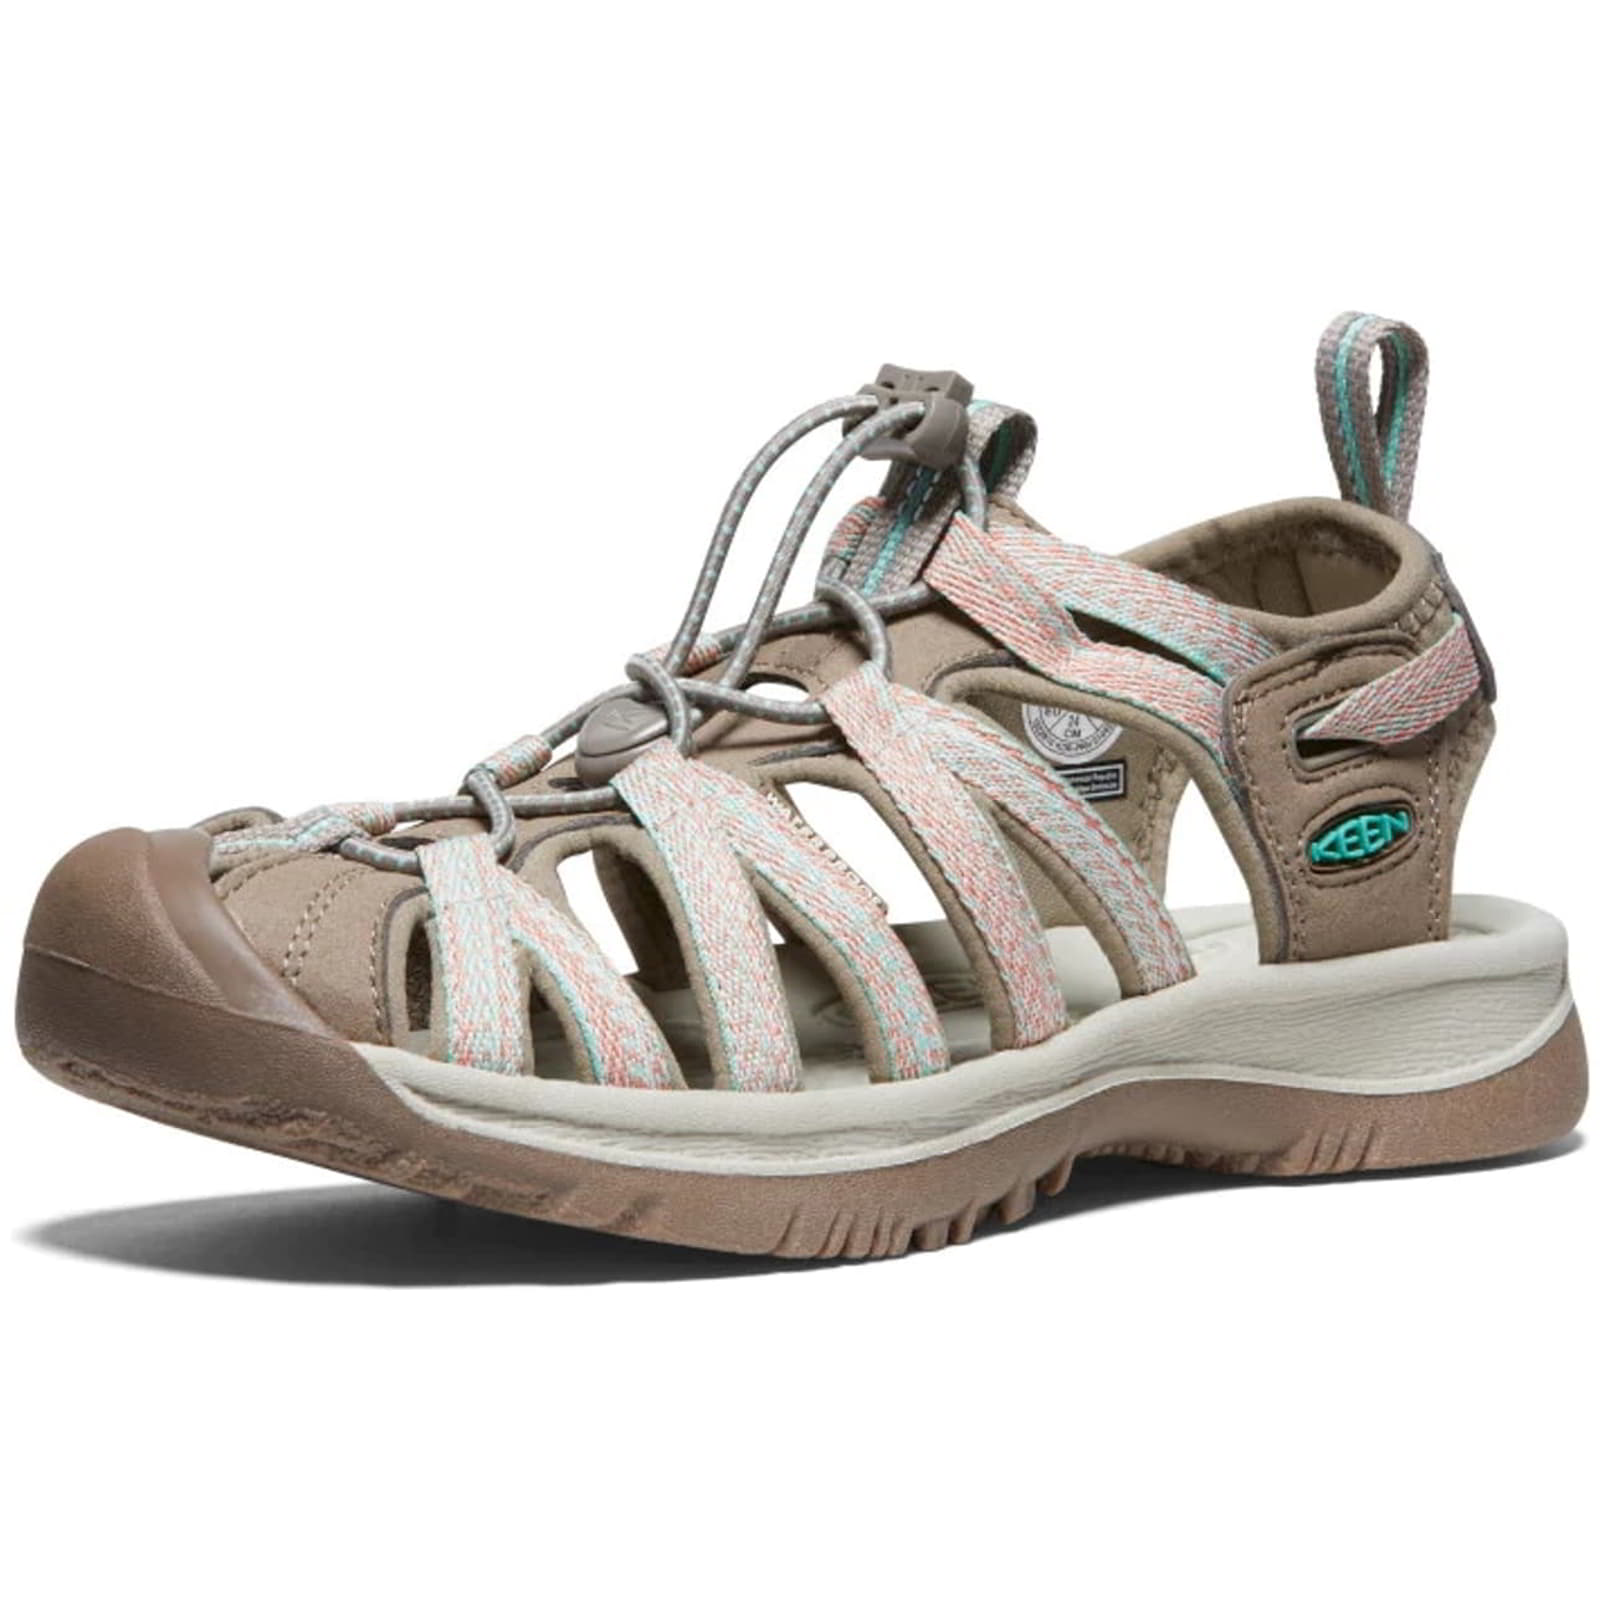 Keen Whisper Women's Waterproof Walking Hiking Sandals - UK 8 / 41 / US 10.5